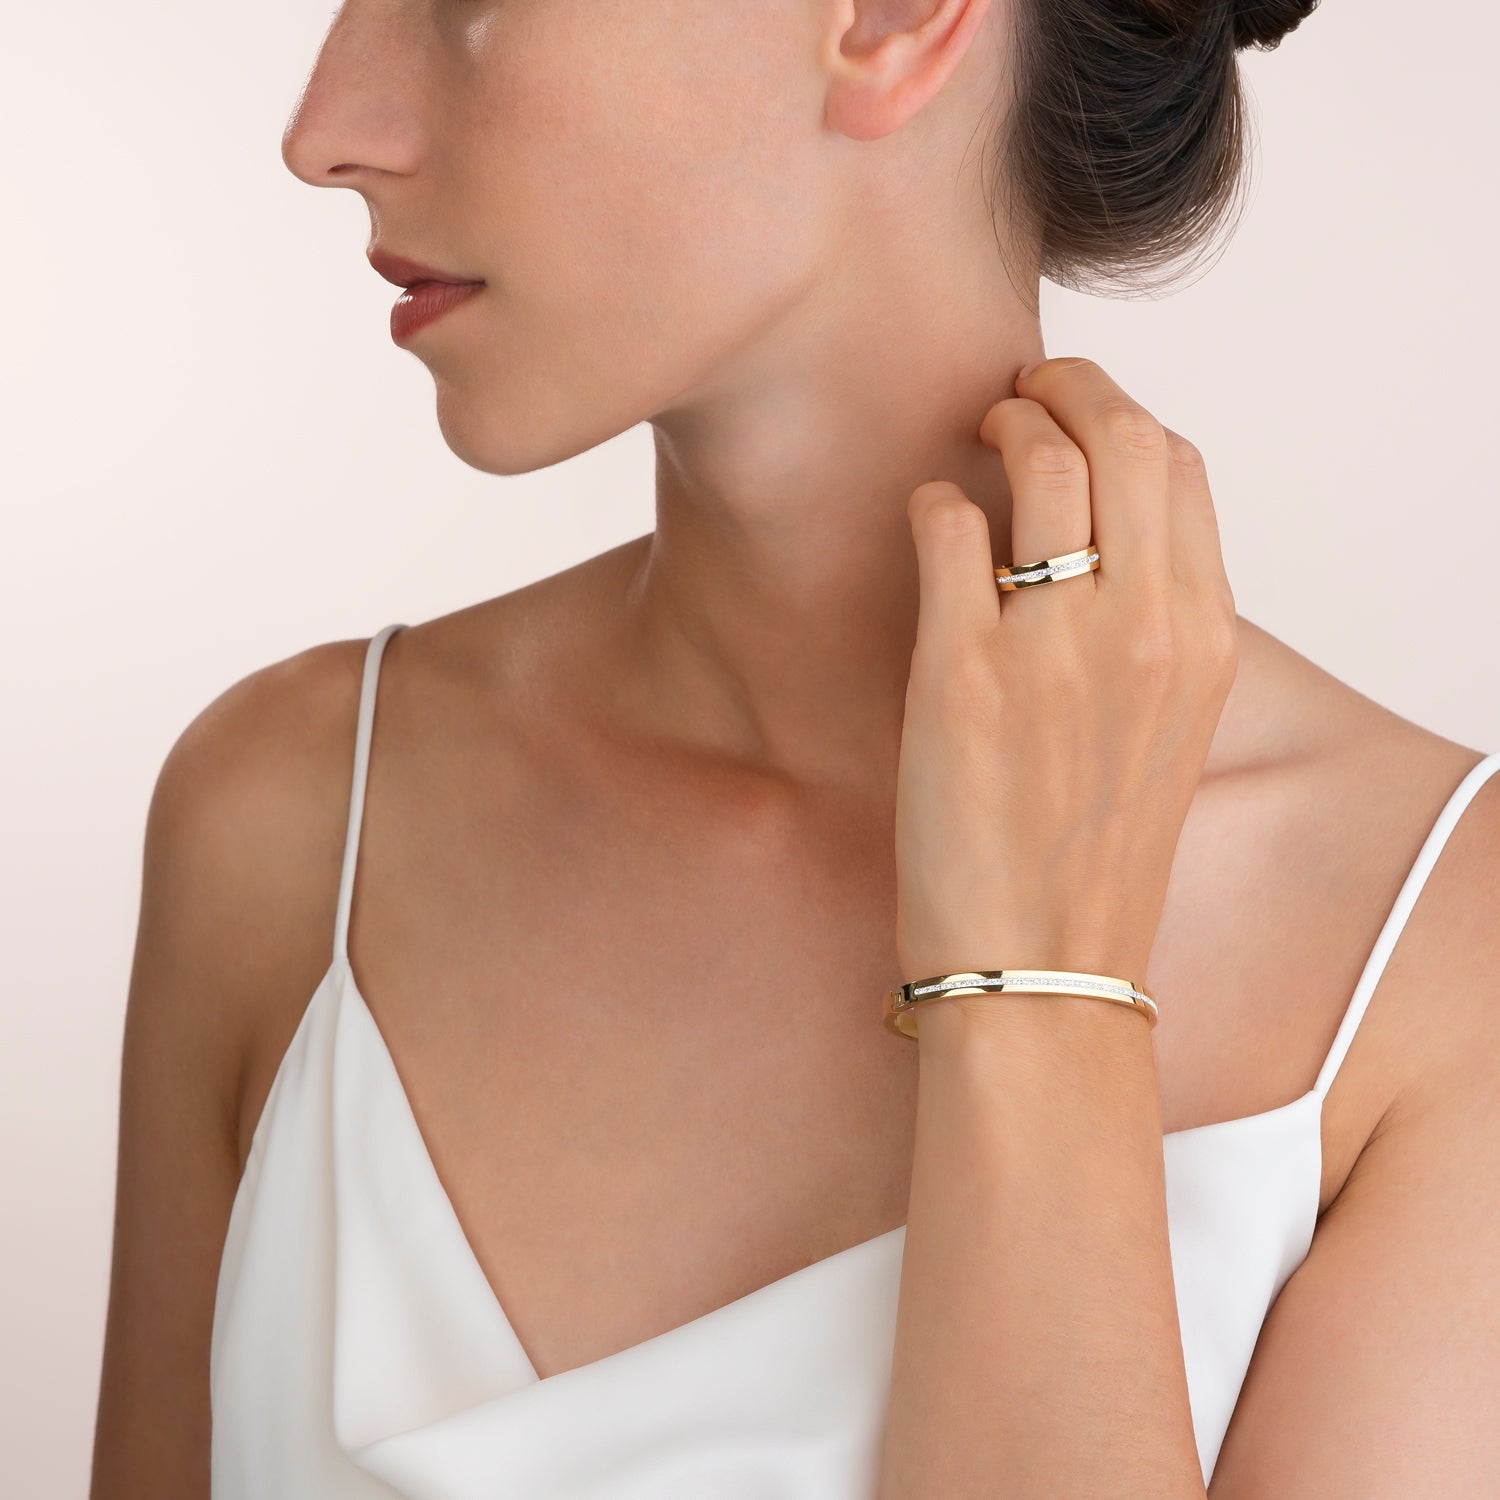 Collection 0326 - Golden White - Size M - Bangle Bracelet - Cœur de Lion